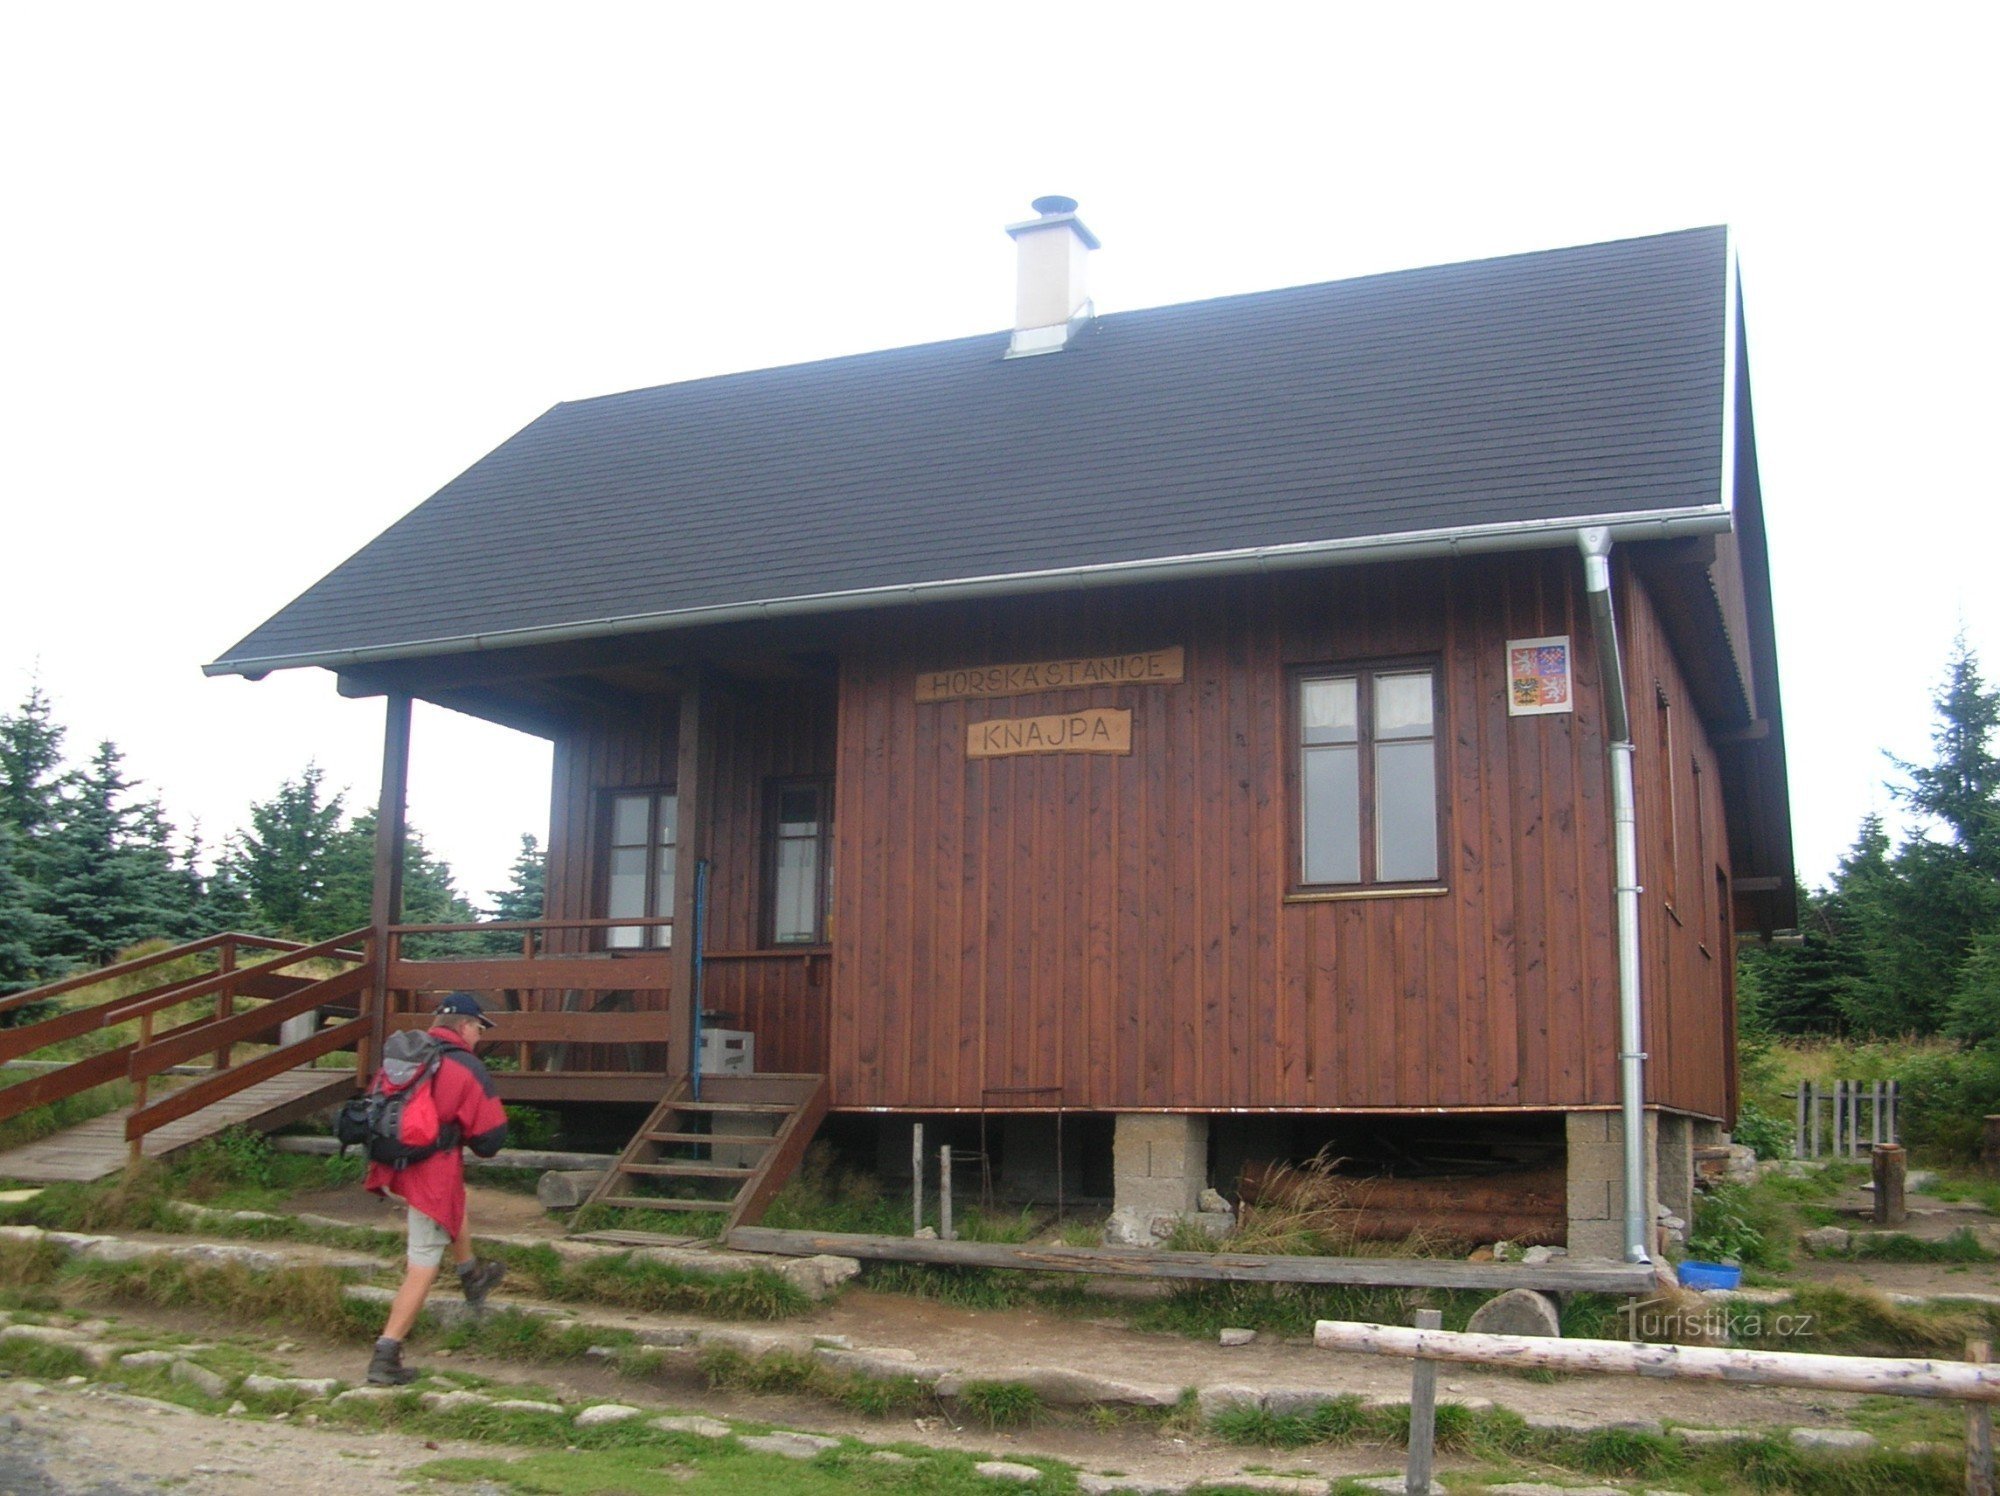 Stația montană Knajpa